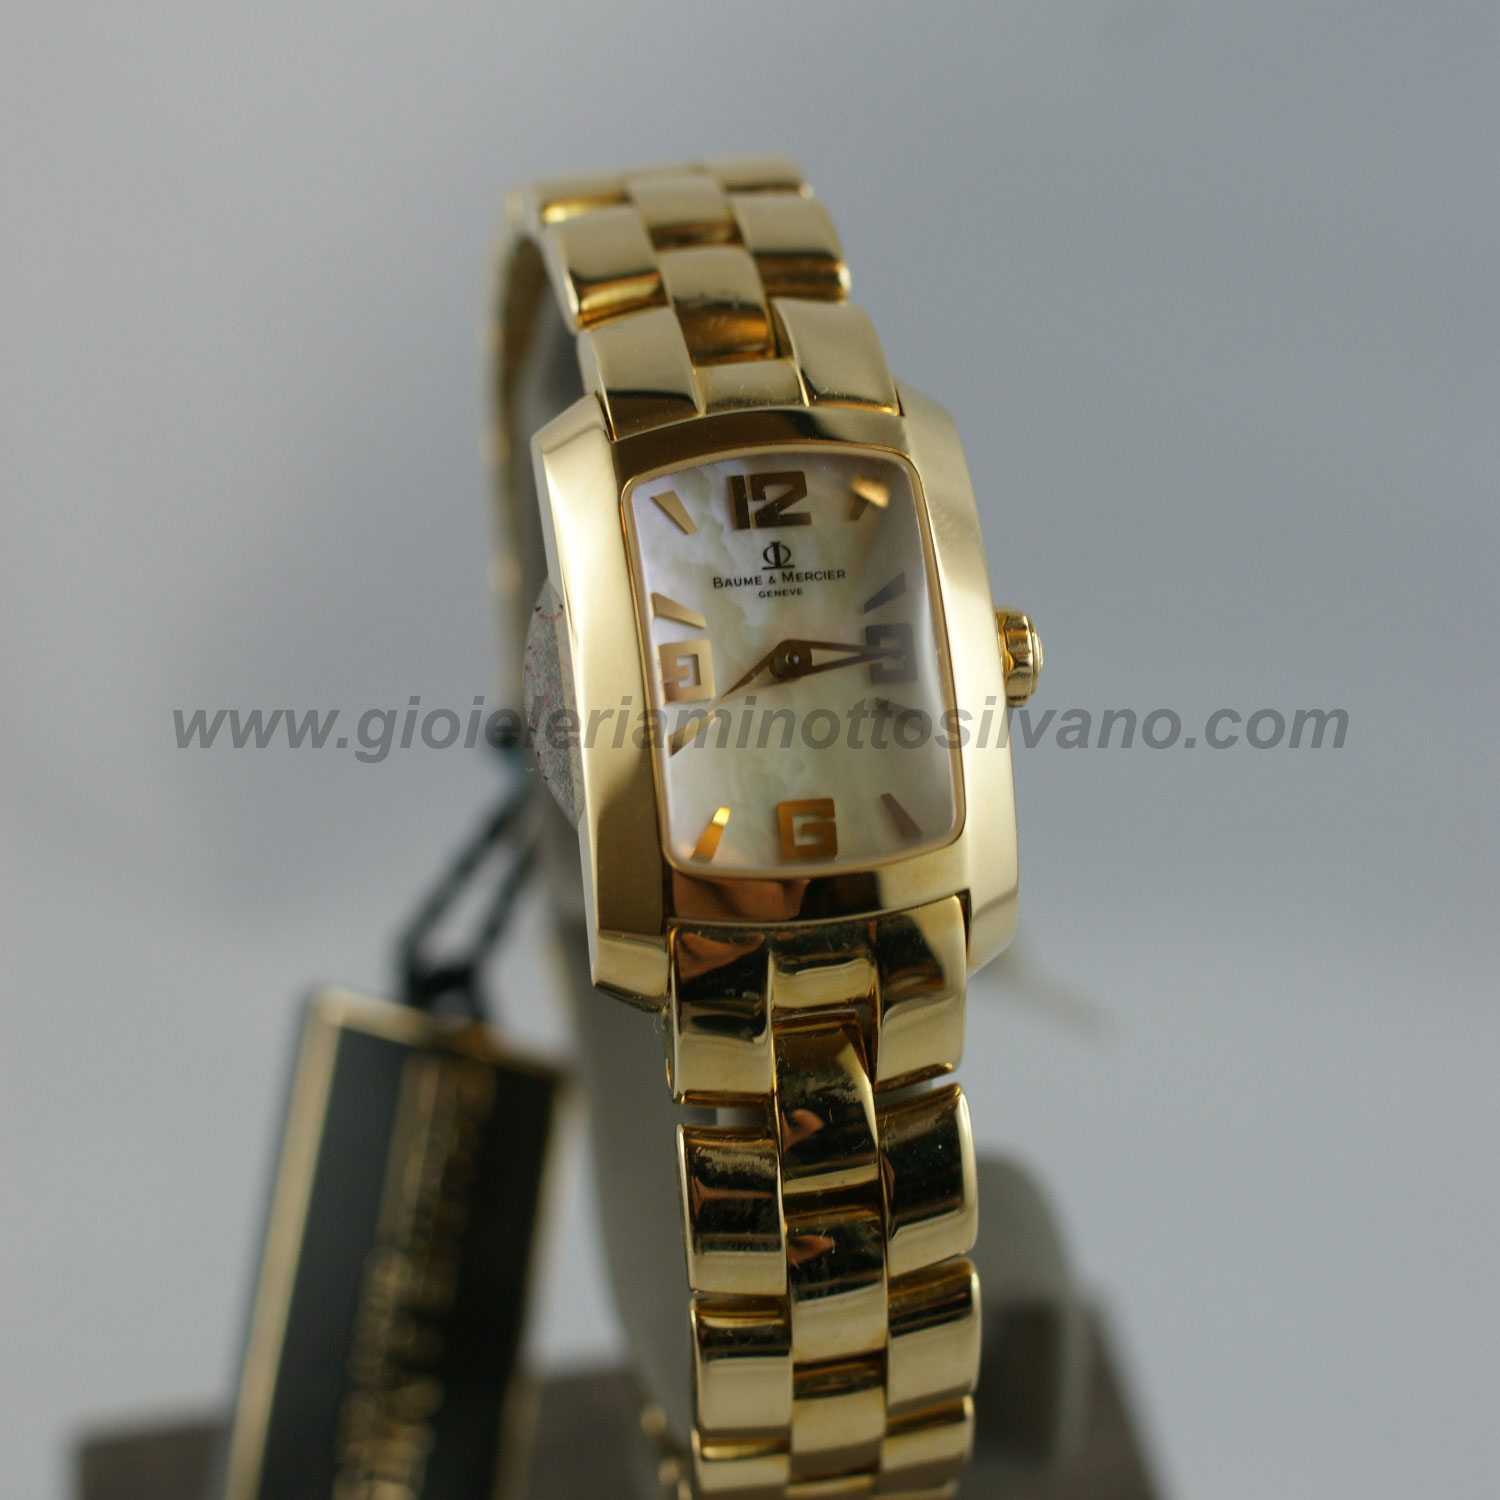 Orologio donna hampton in oro massiccio BAUME & MERCIER MOA08239